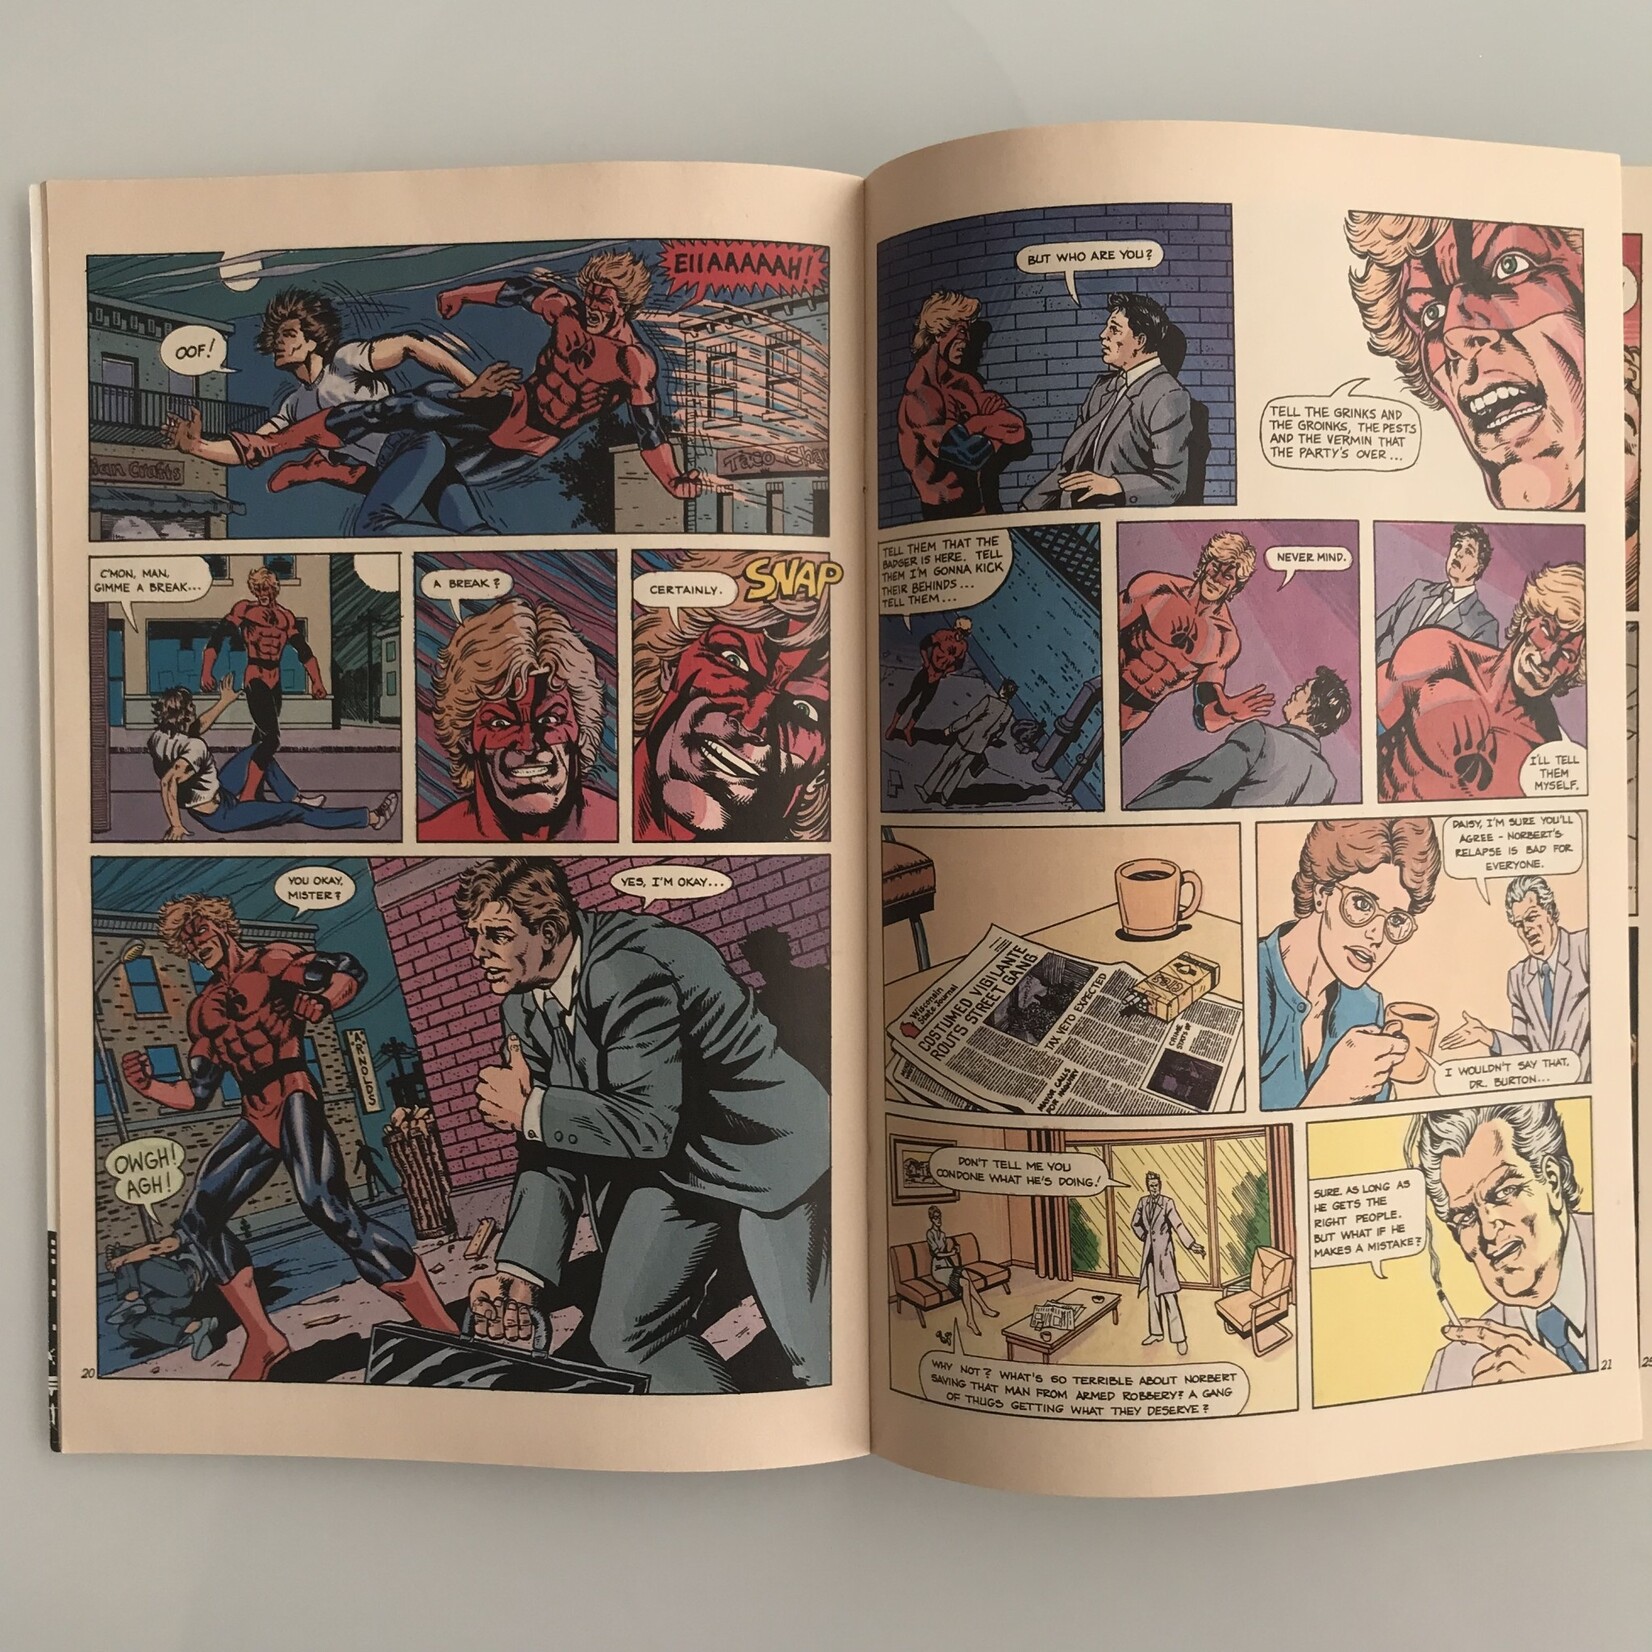 Badger - Vol. 1 #01 October 1983 - Comic Book